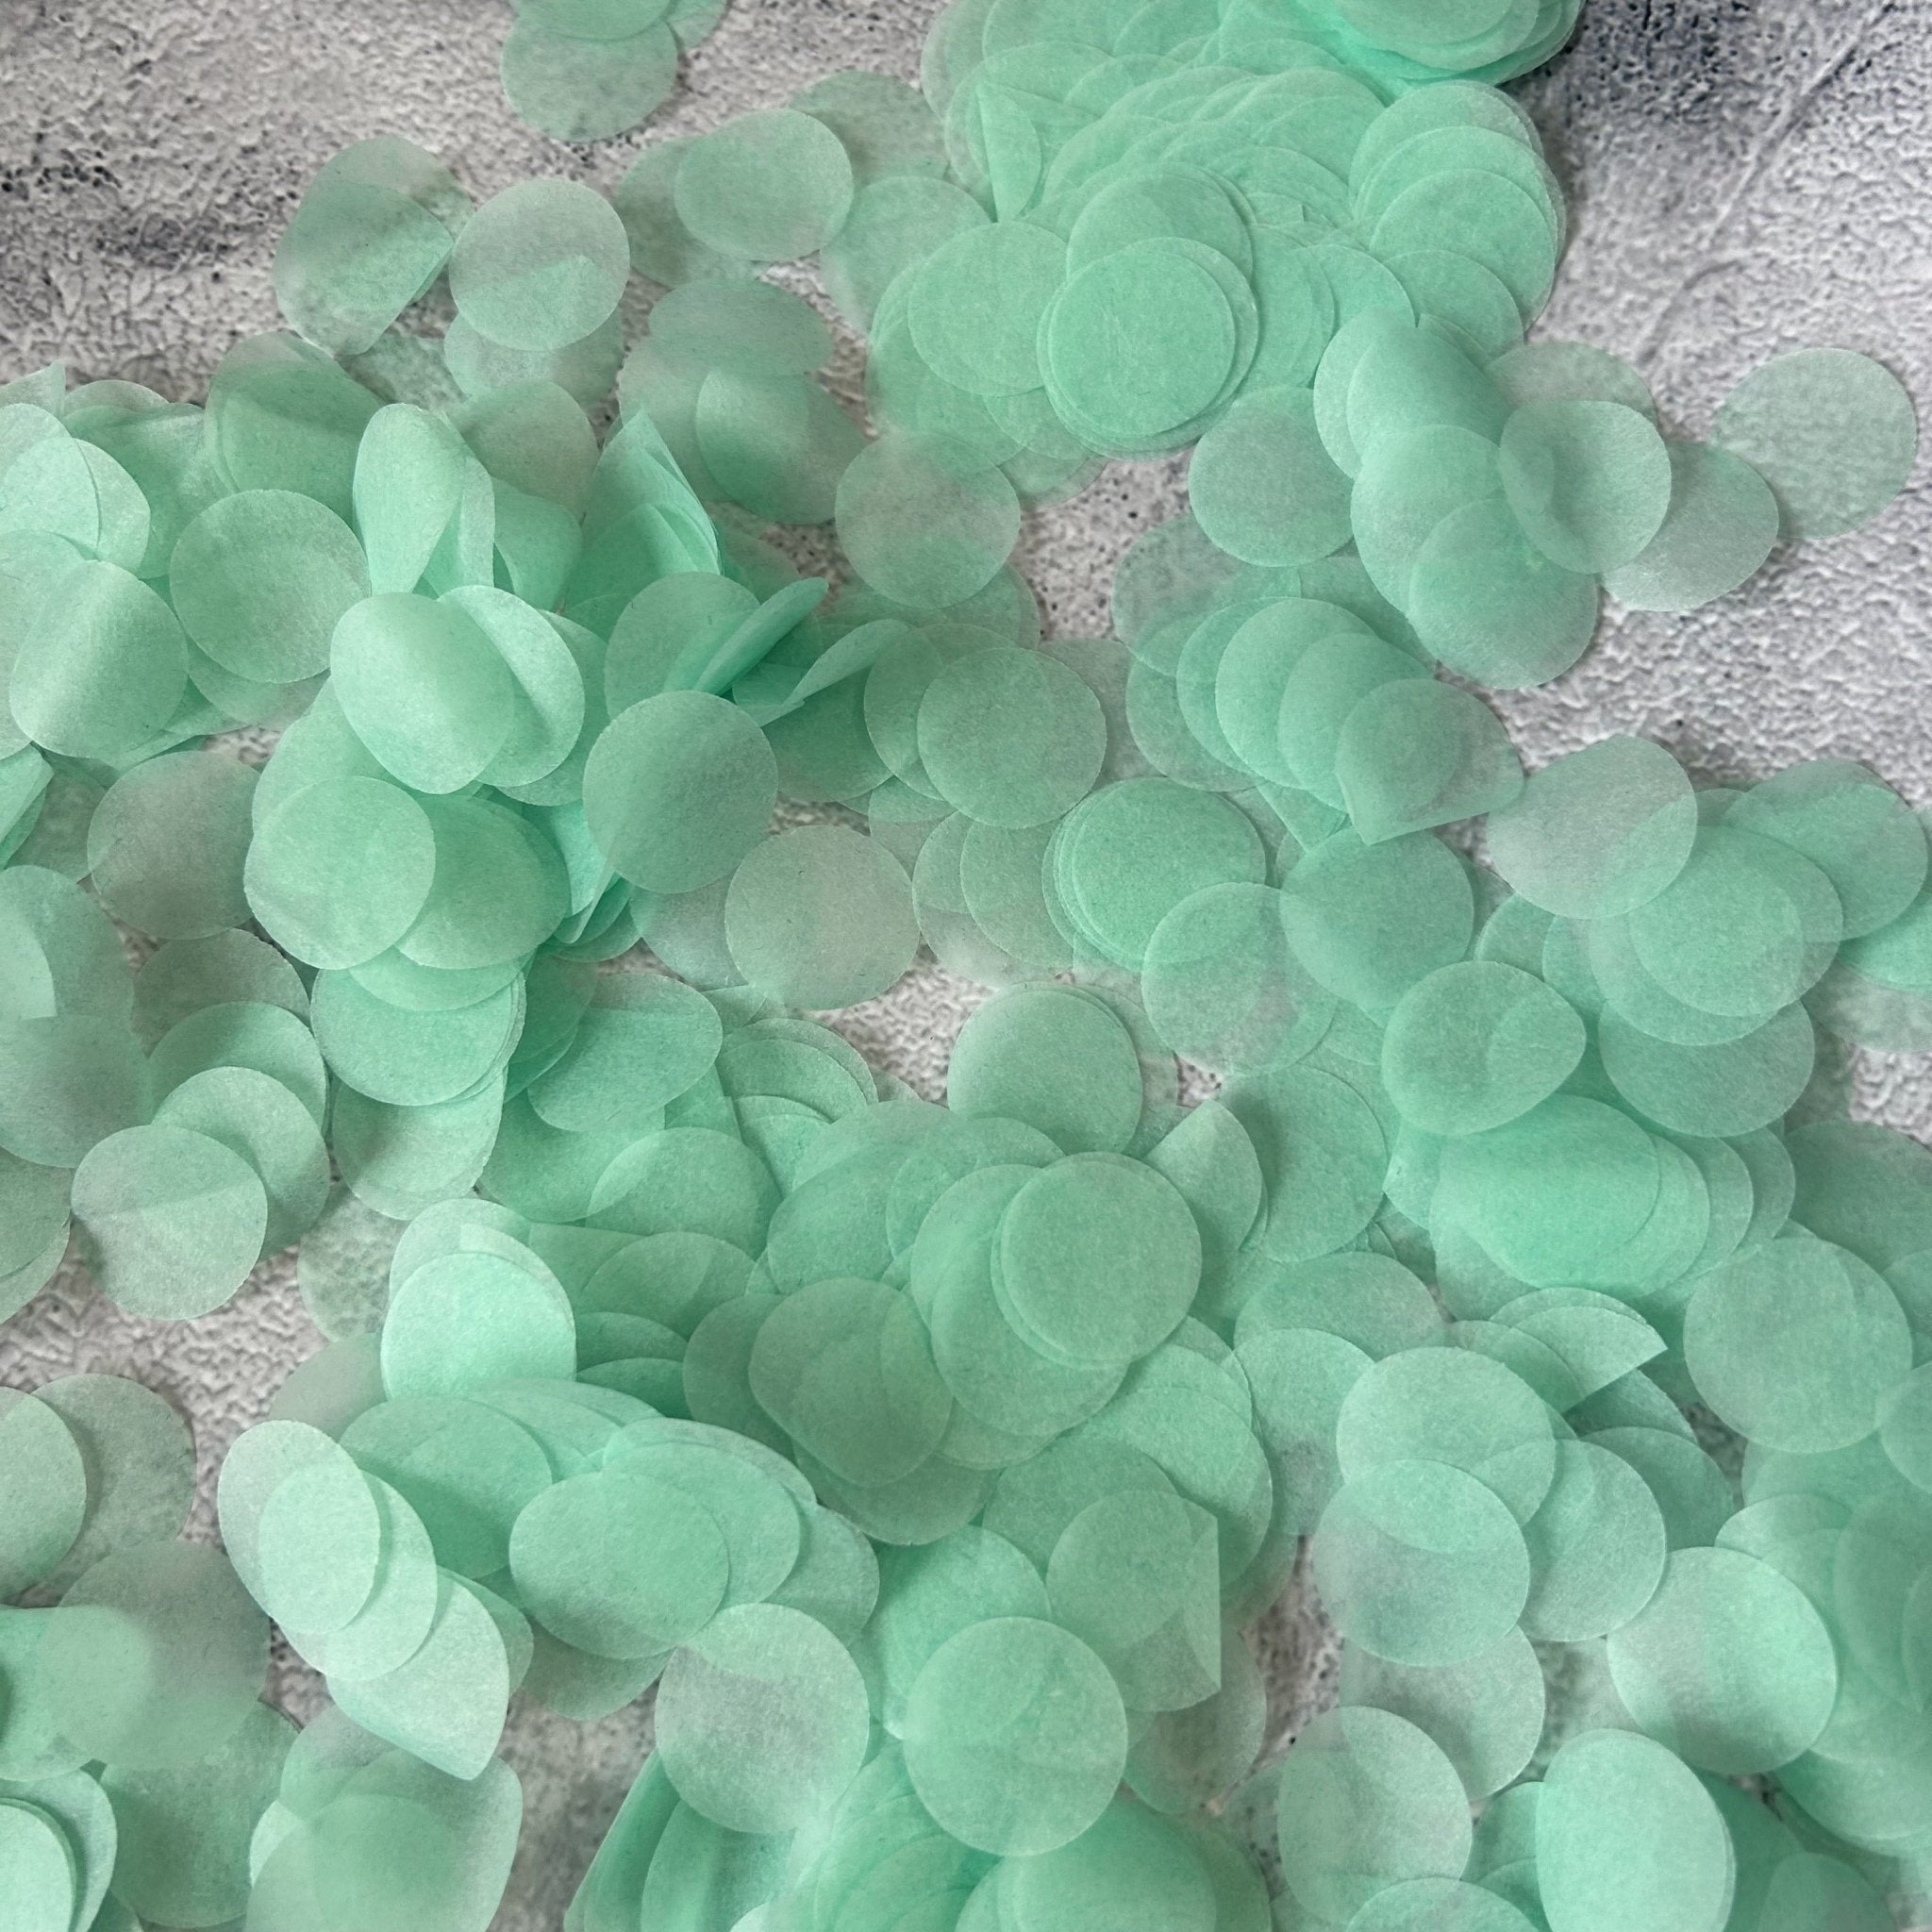 Mint Green Paper Confetti, Biodegradable Paper Confetti